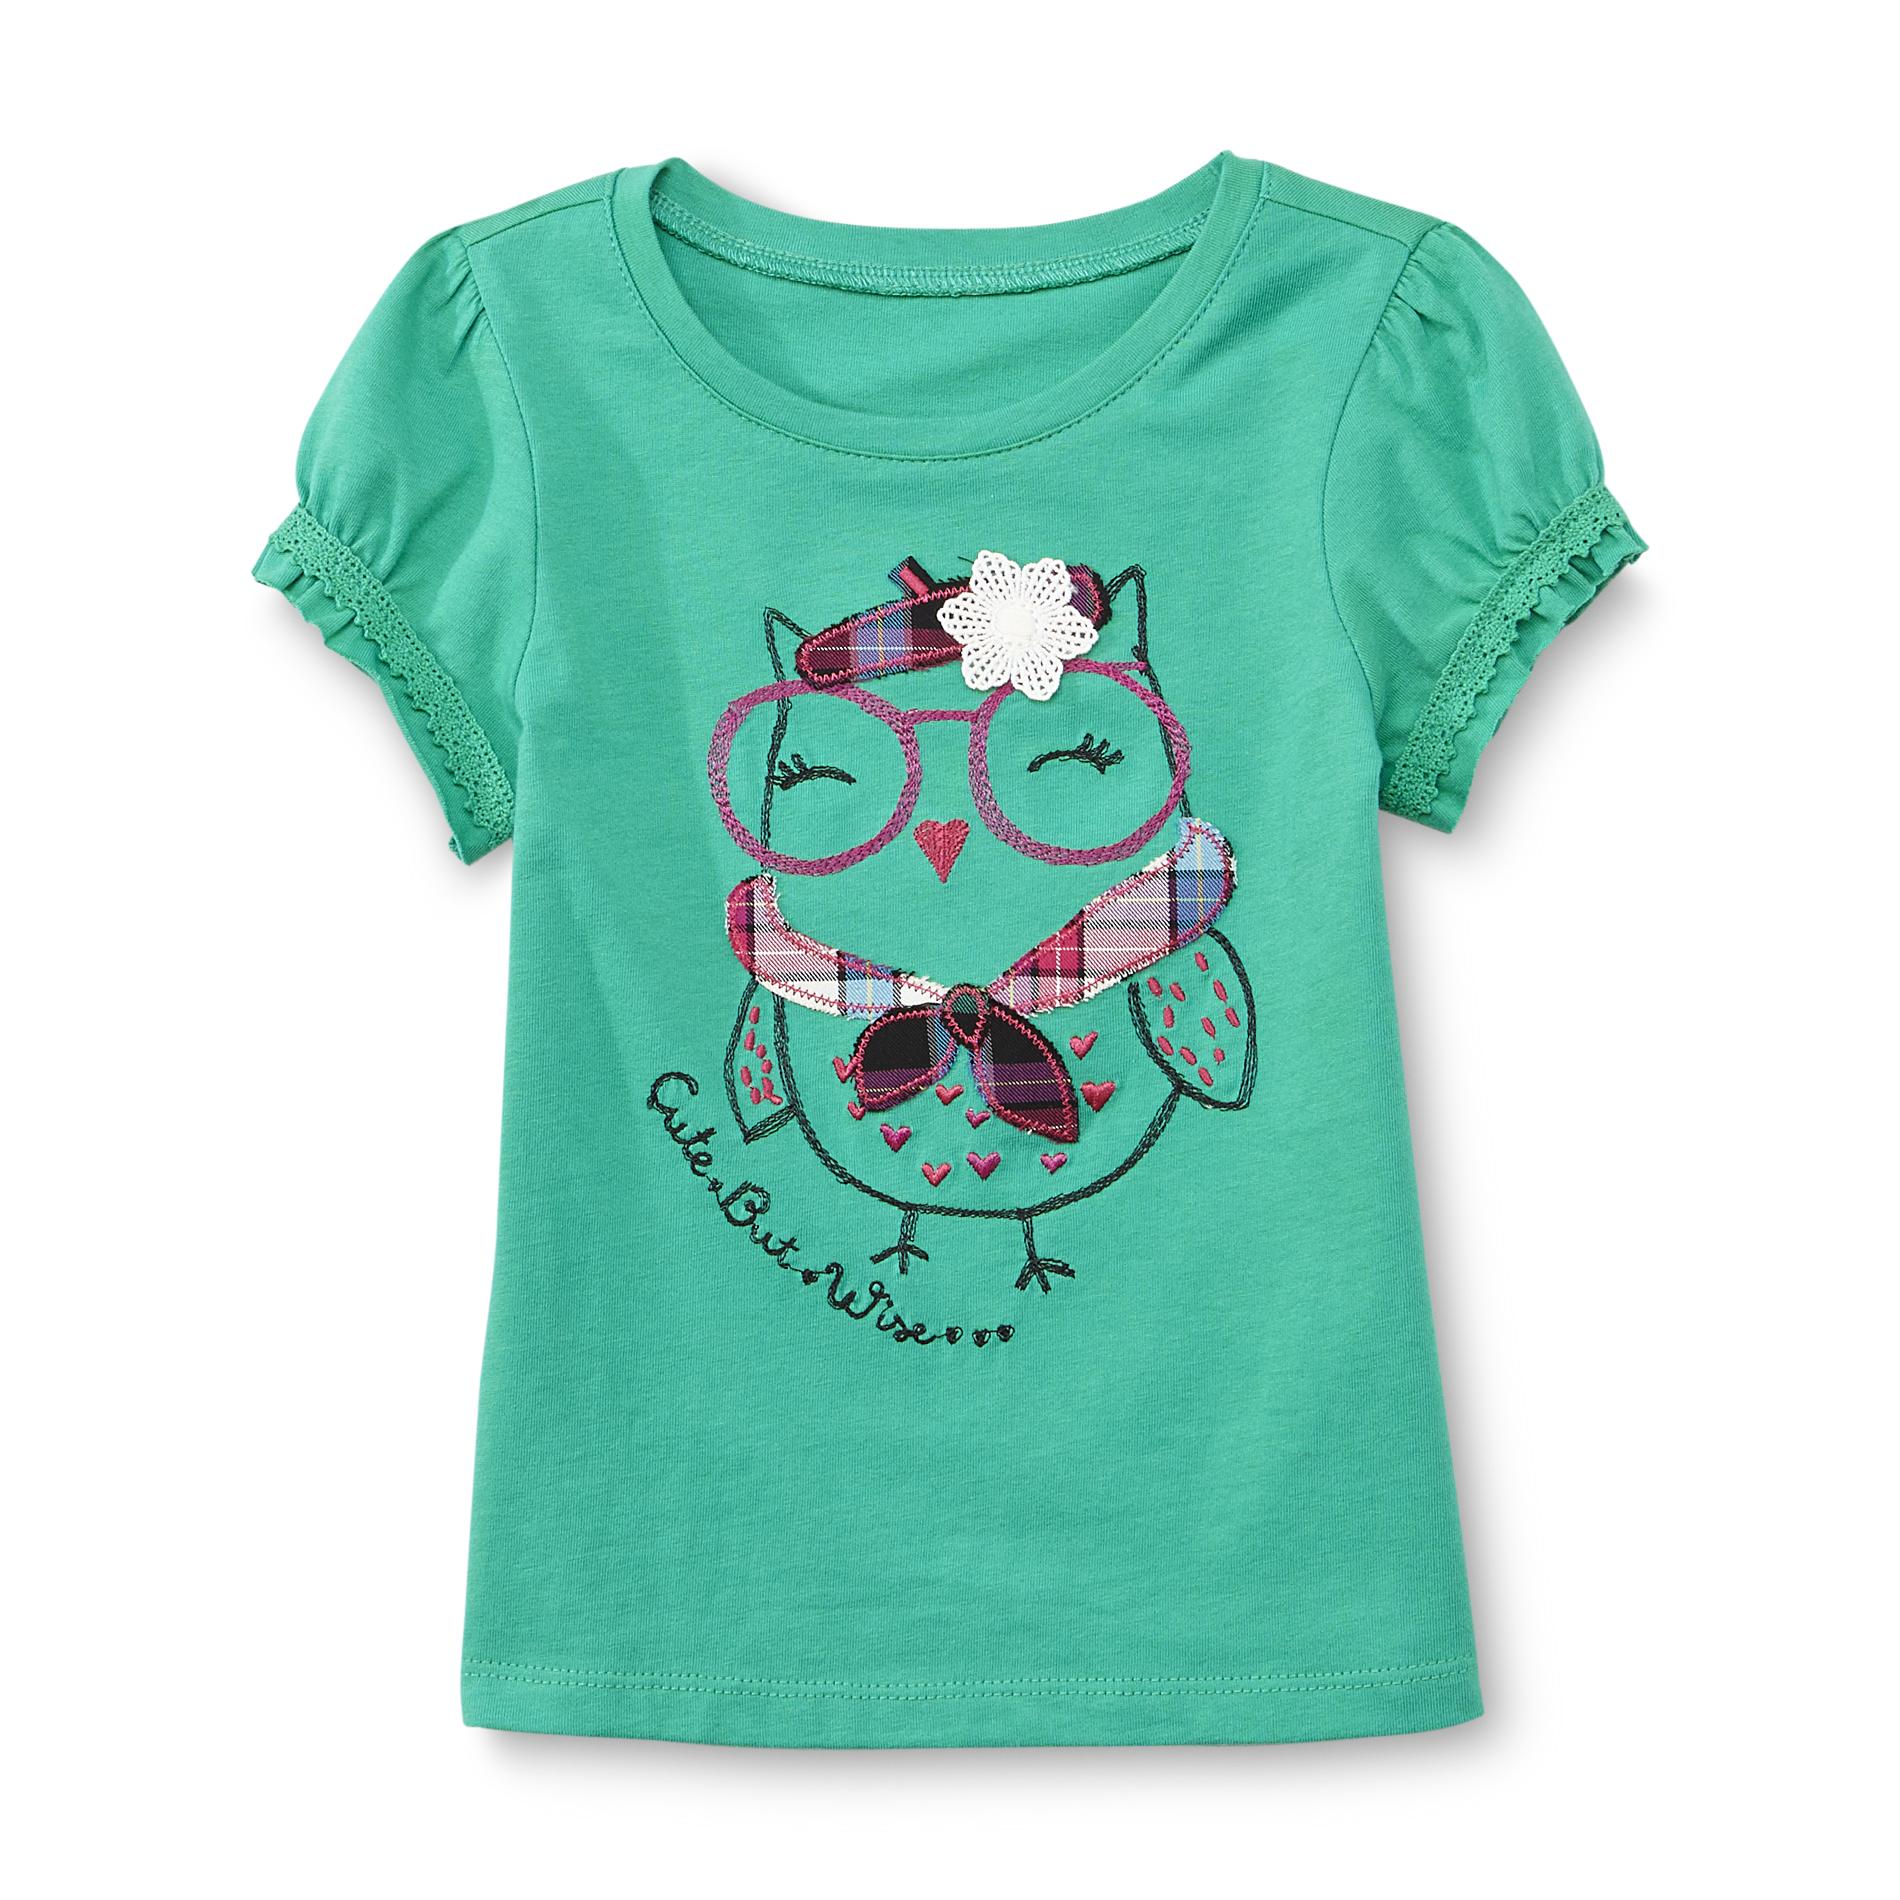 Toughskins Toddler Girl's Cap Sleeve T-Shirt - Owl